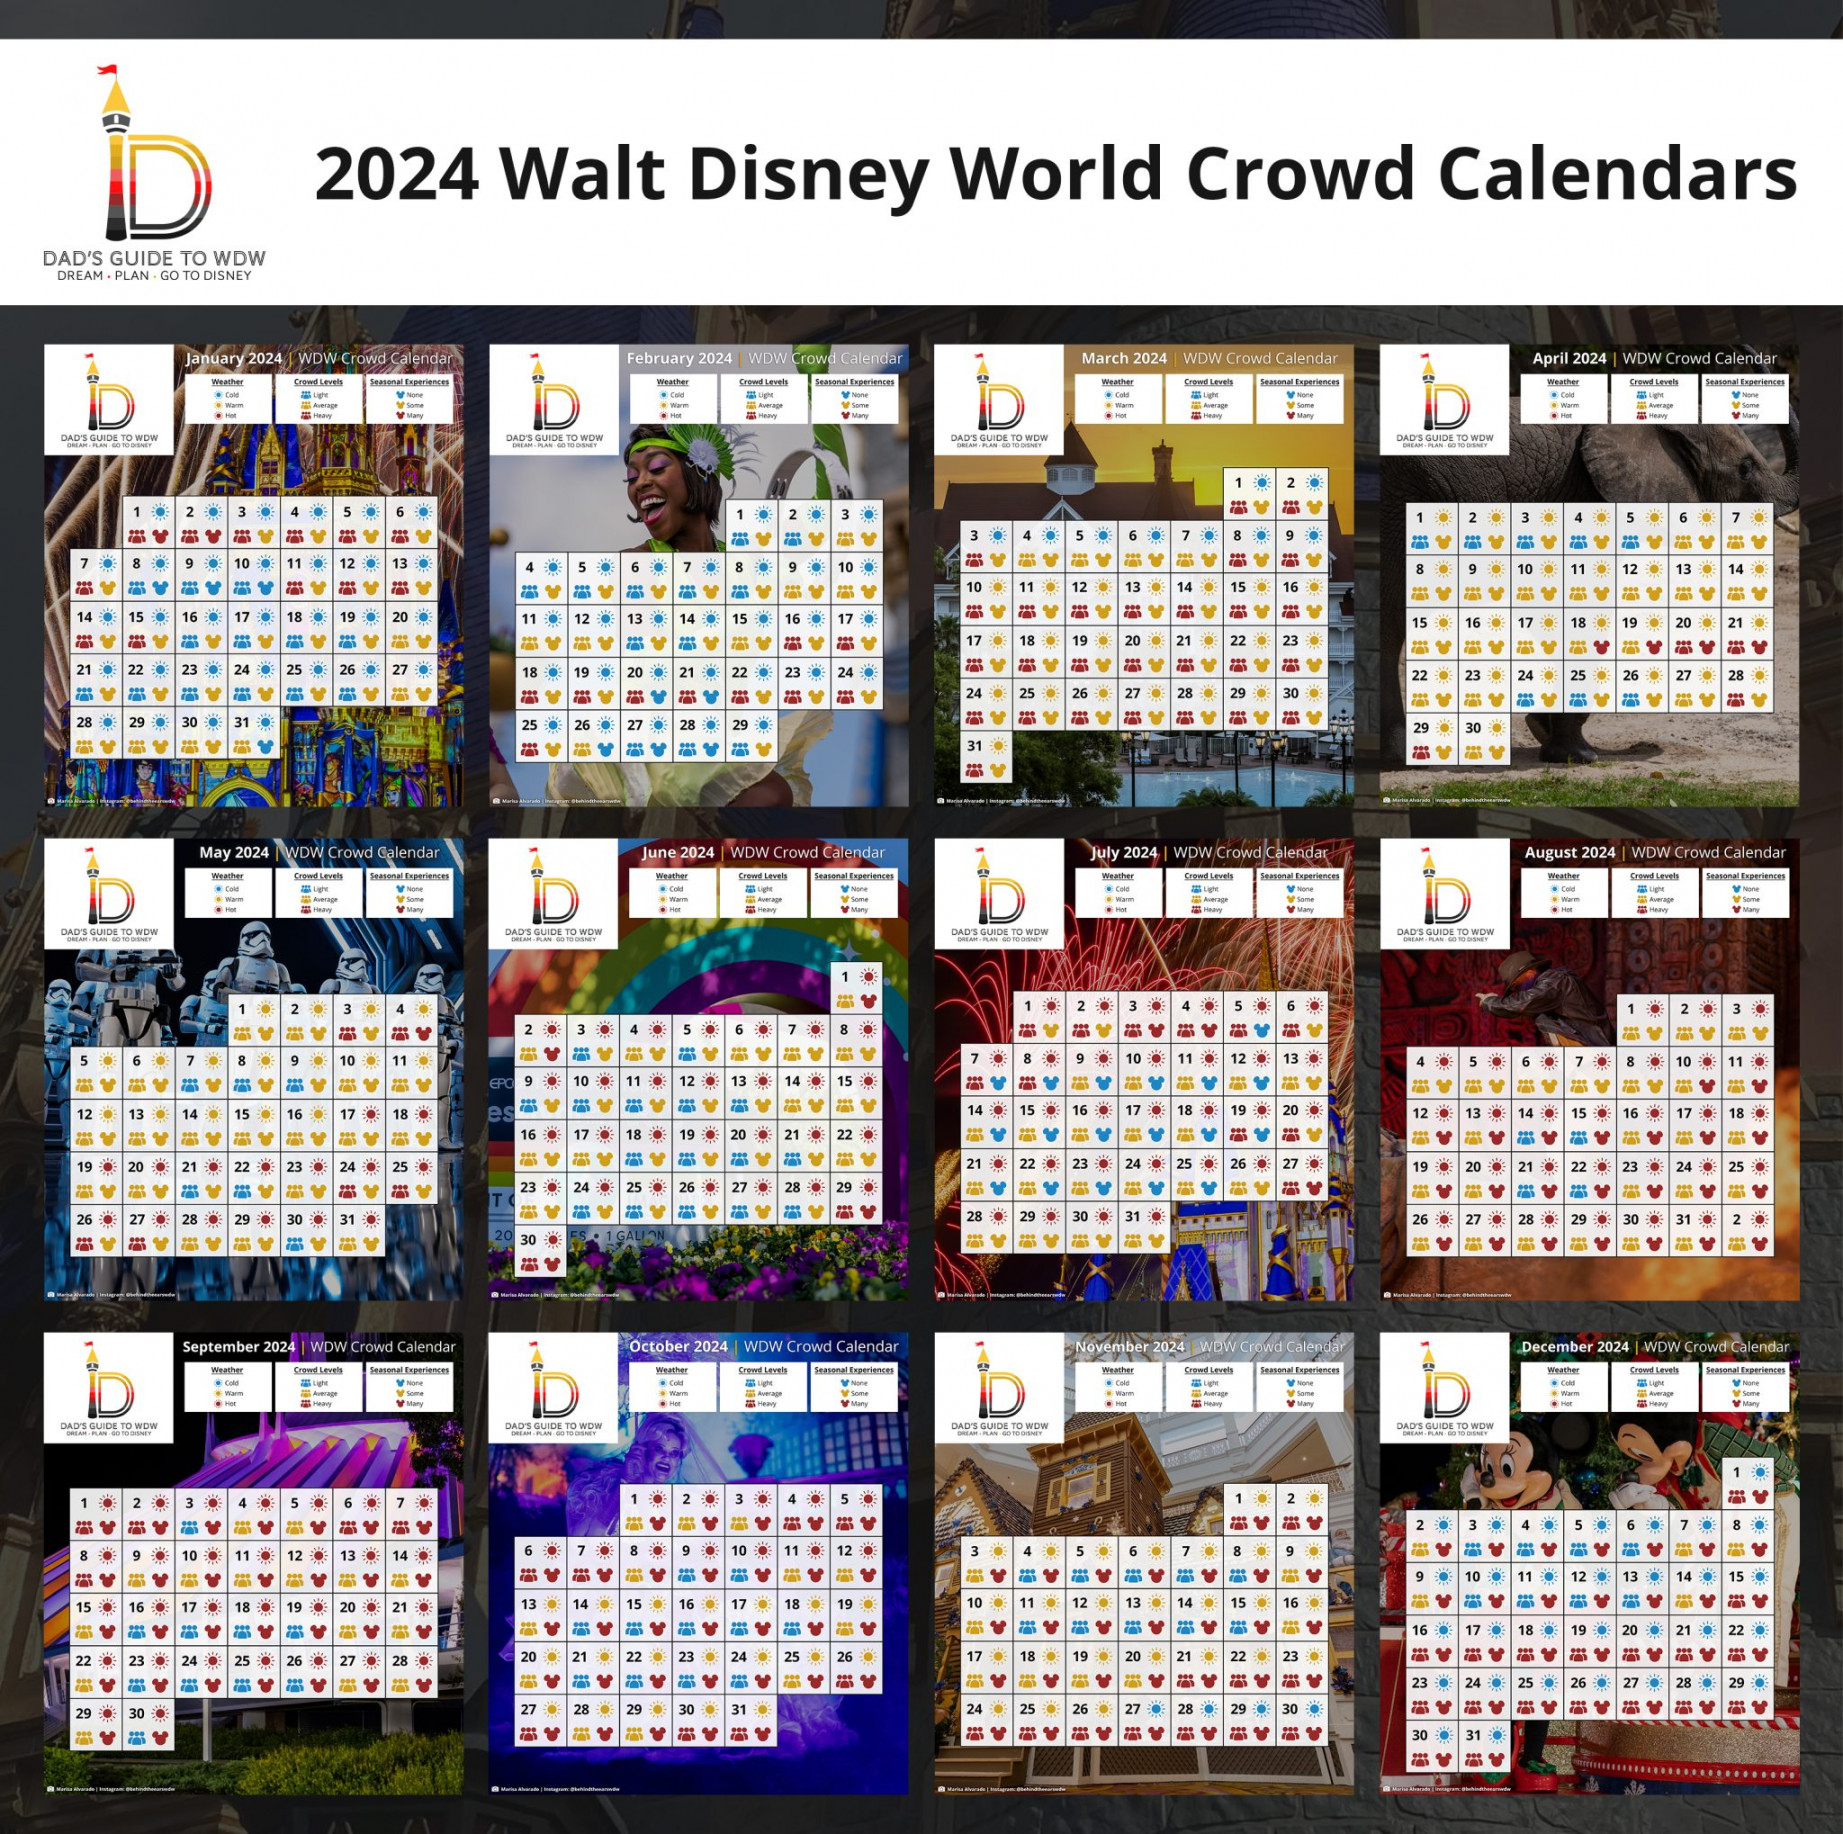 Walt Disney World Crowd Calendars - DadsGuidetoWDW